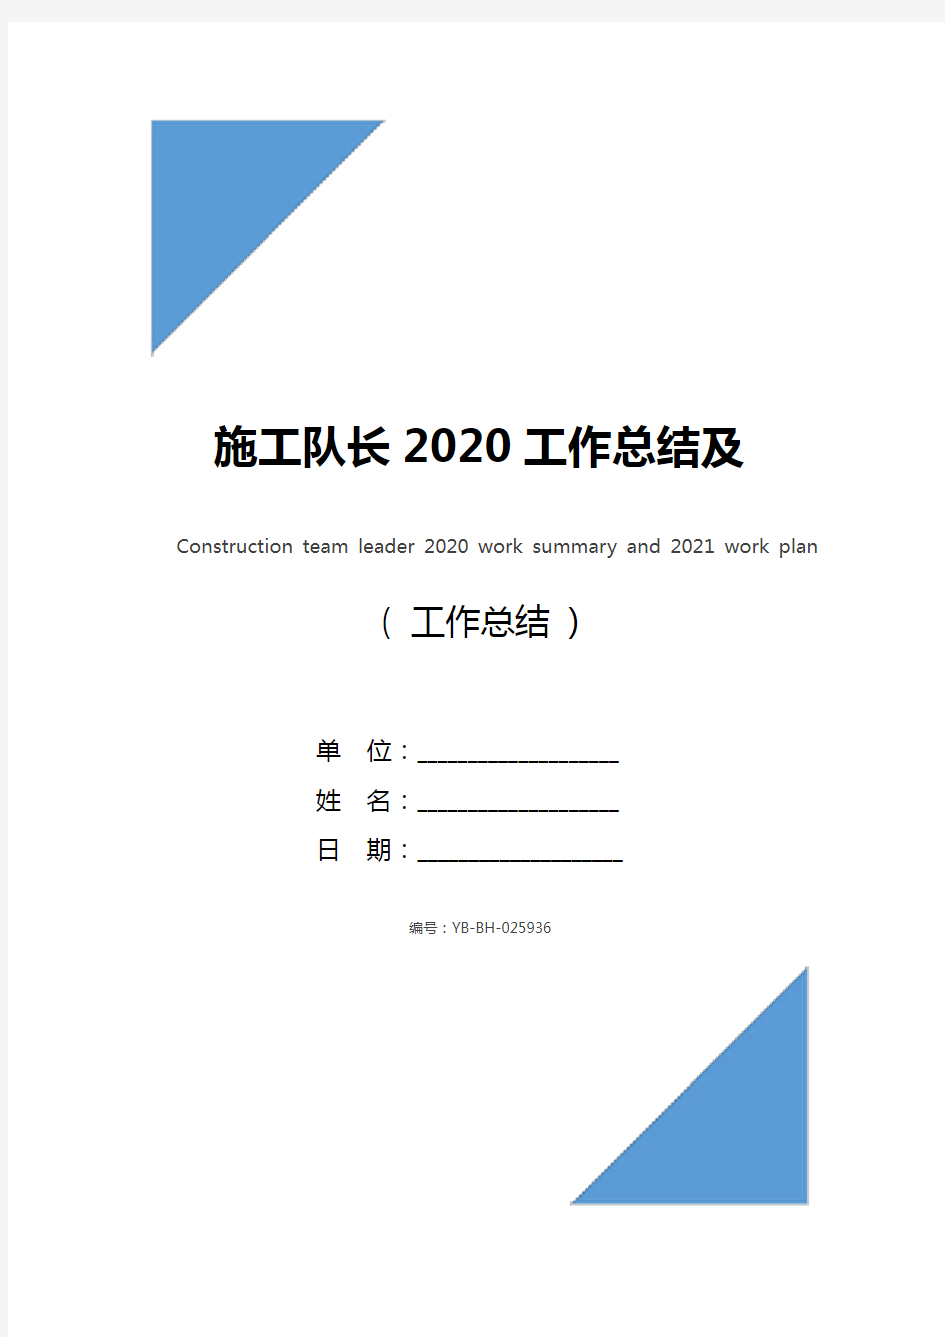 施工队长2020工作总结及2021工作计划